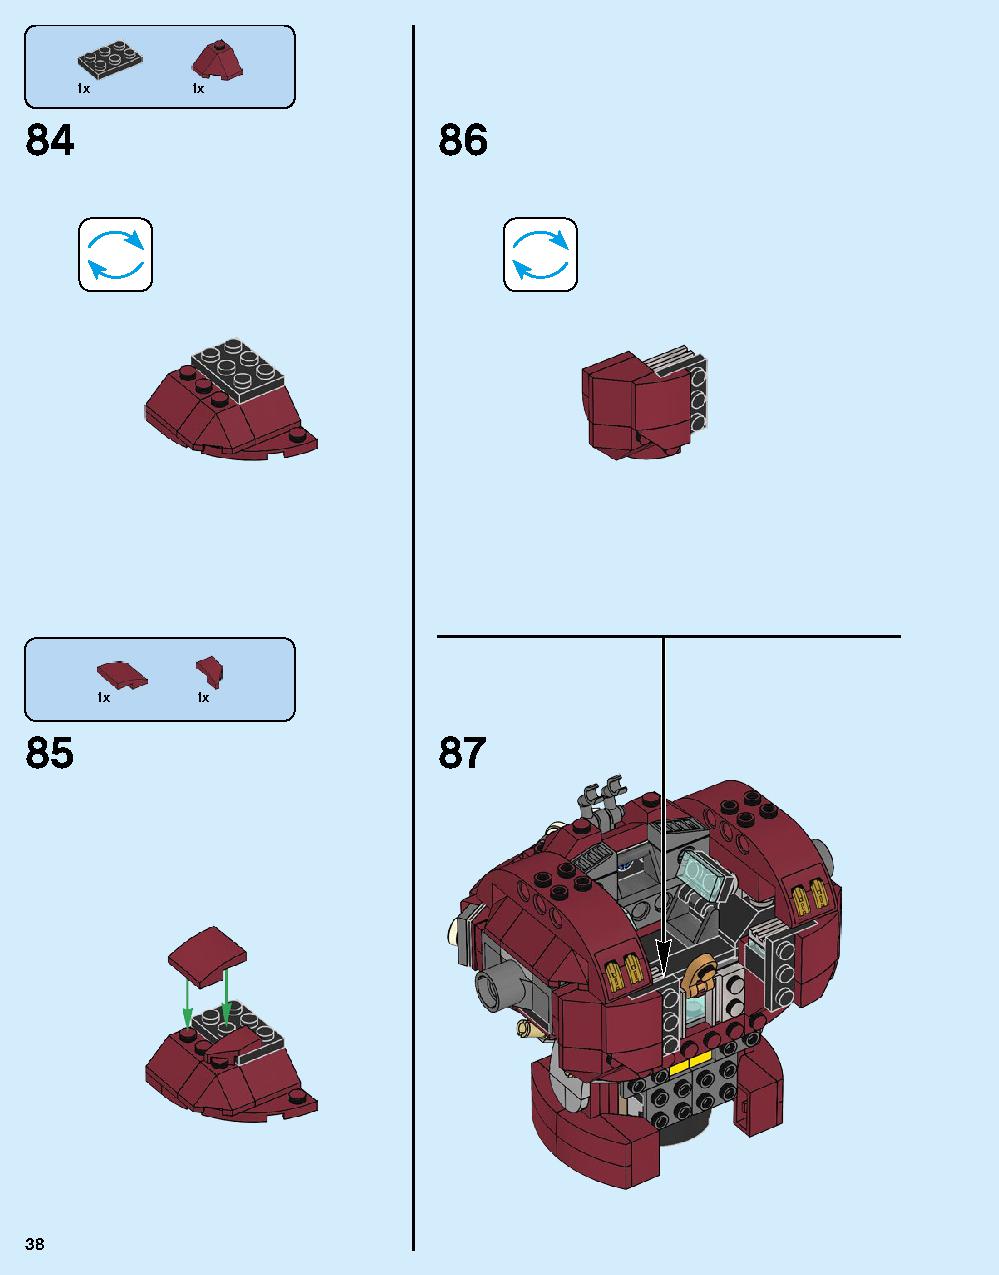 ハルクバスター：ウルトロン・エディション 76105 レゴの商品情報 レゴの説明書・組立方法 38 page